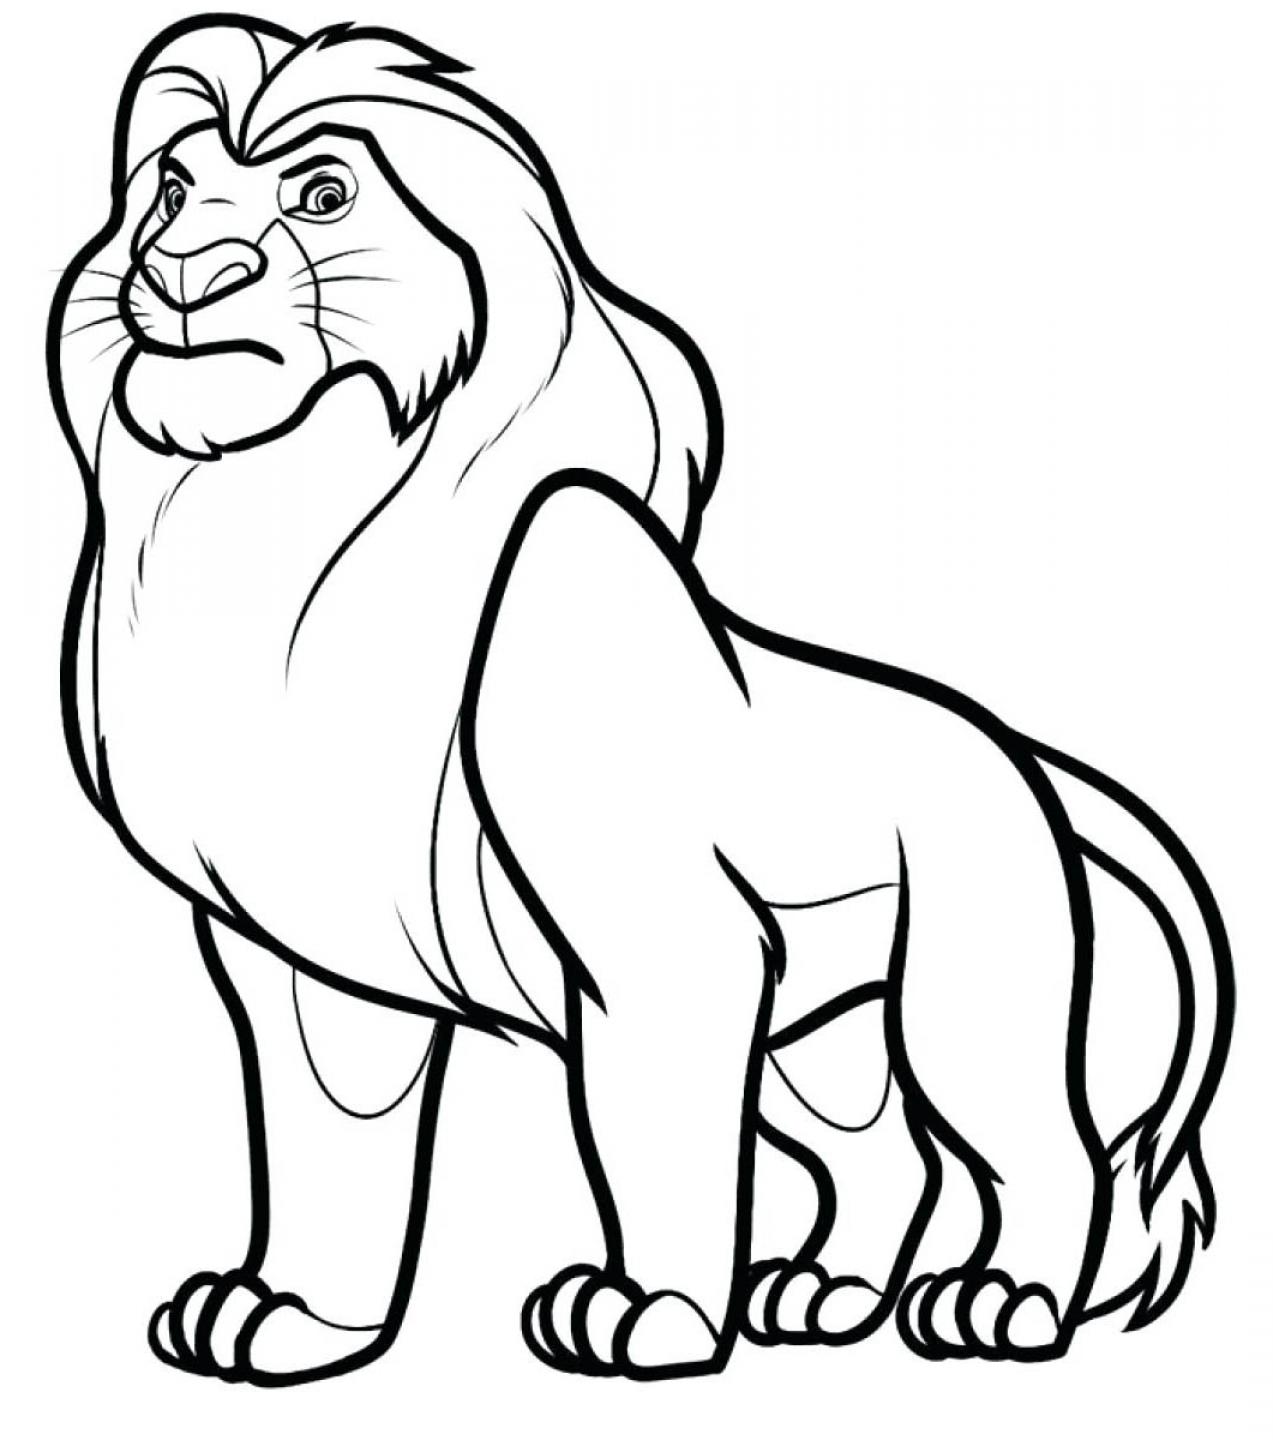 Lion Printable Kids Coloring Pages - SheetalColor.com